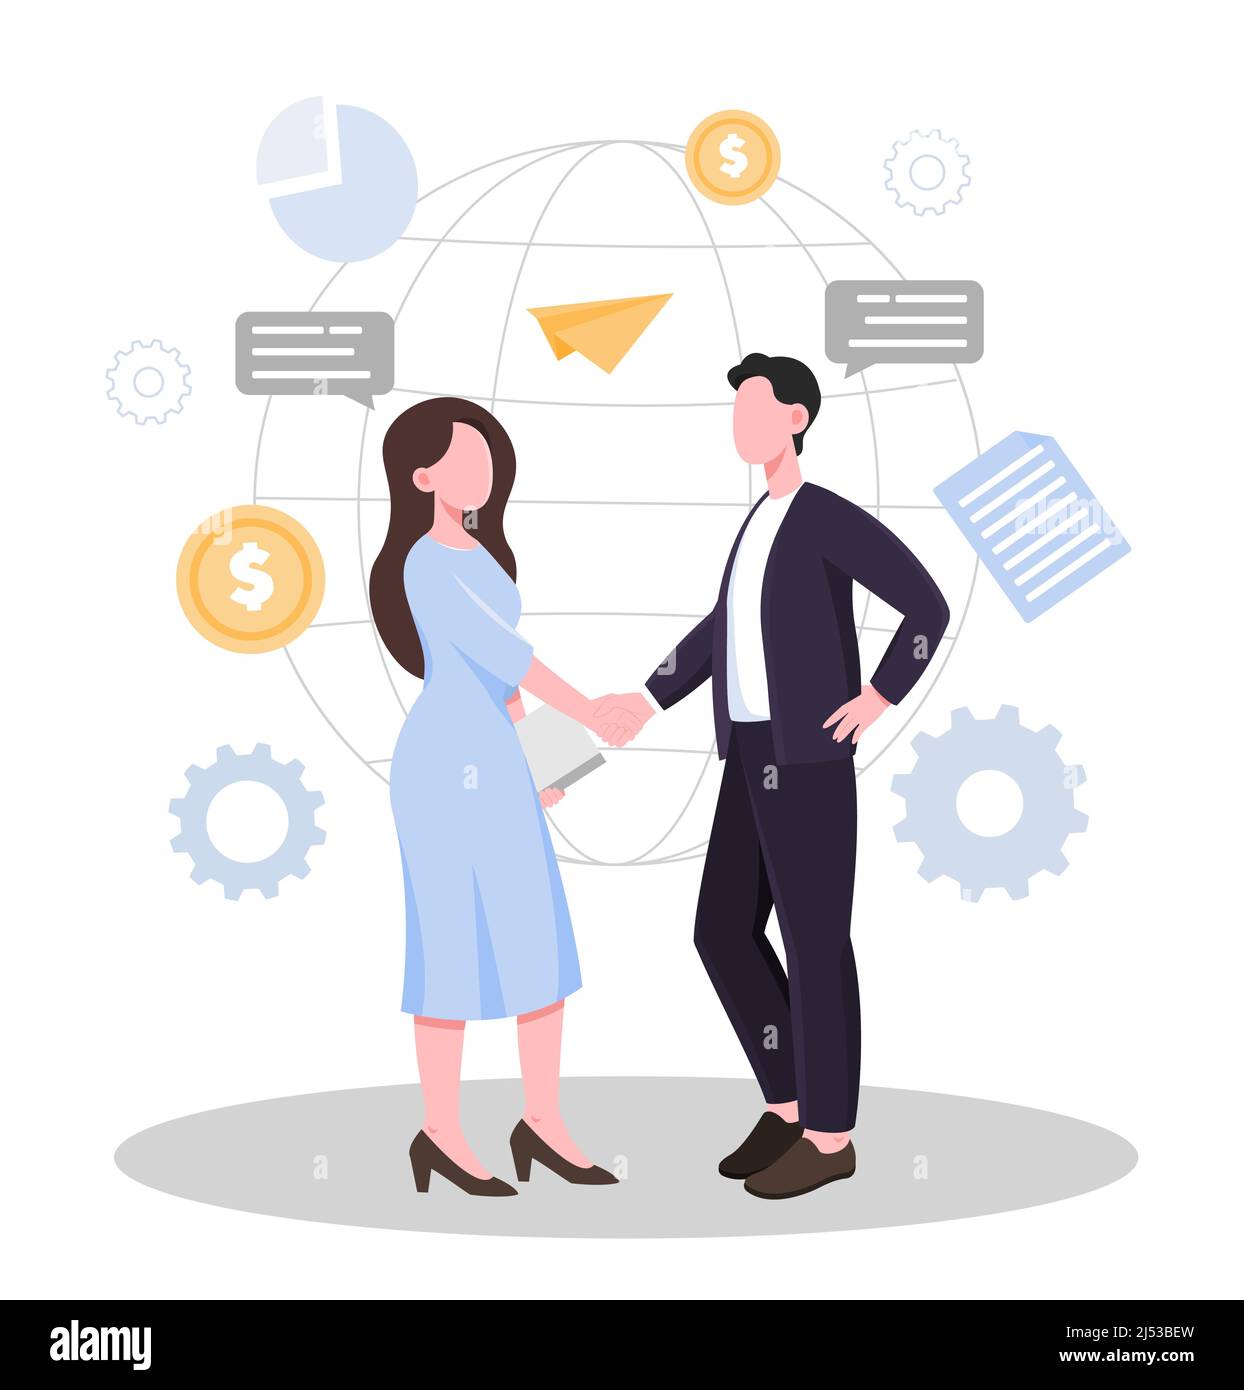 Business partners handshake concept Stock Vector